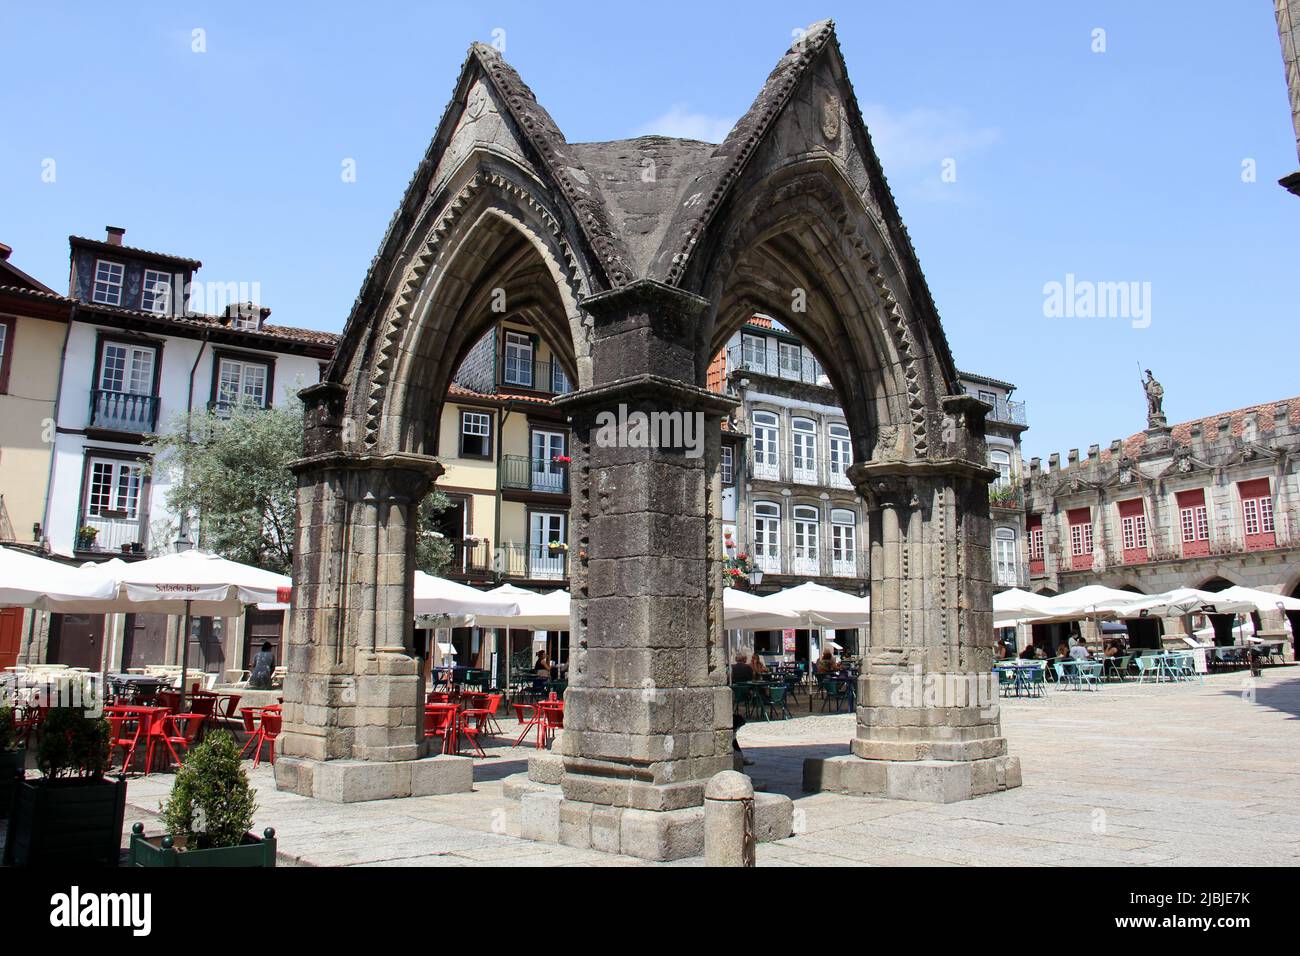 Padrao do Salado, monument gothique du 14th siècle, situé sur la place Oliveira, Guimaraes, Portugal Banque D'Images